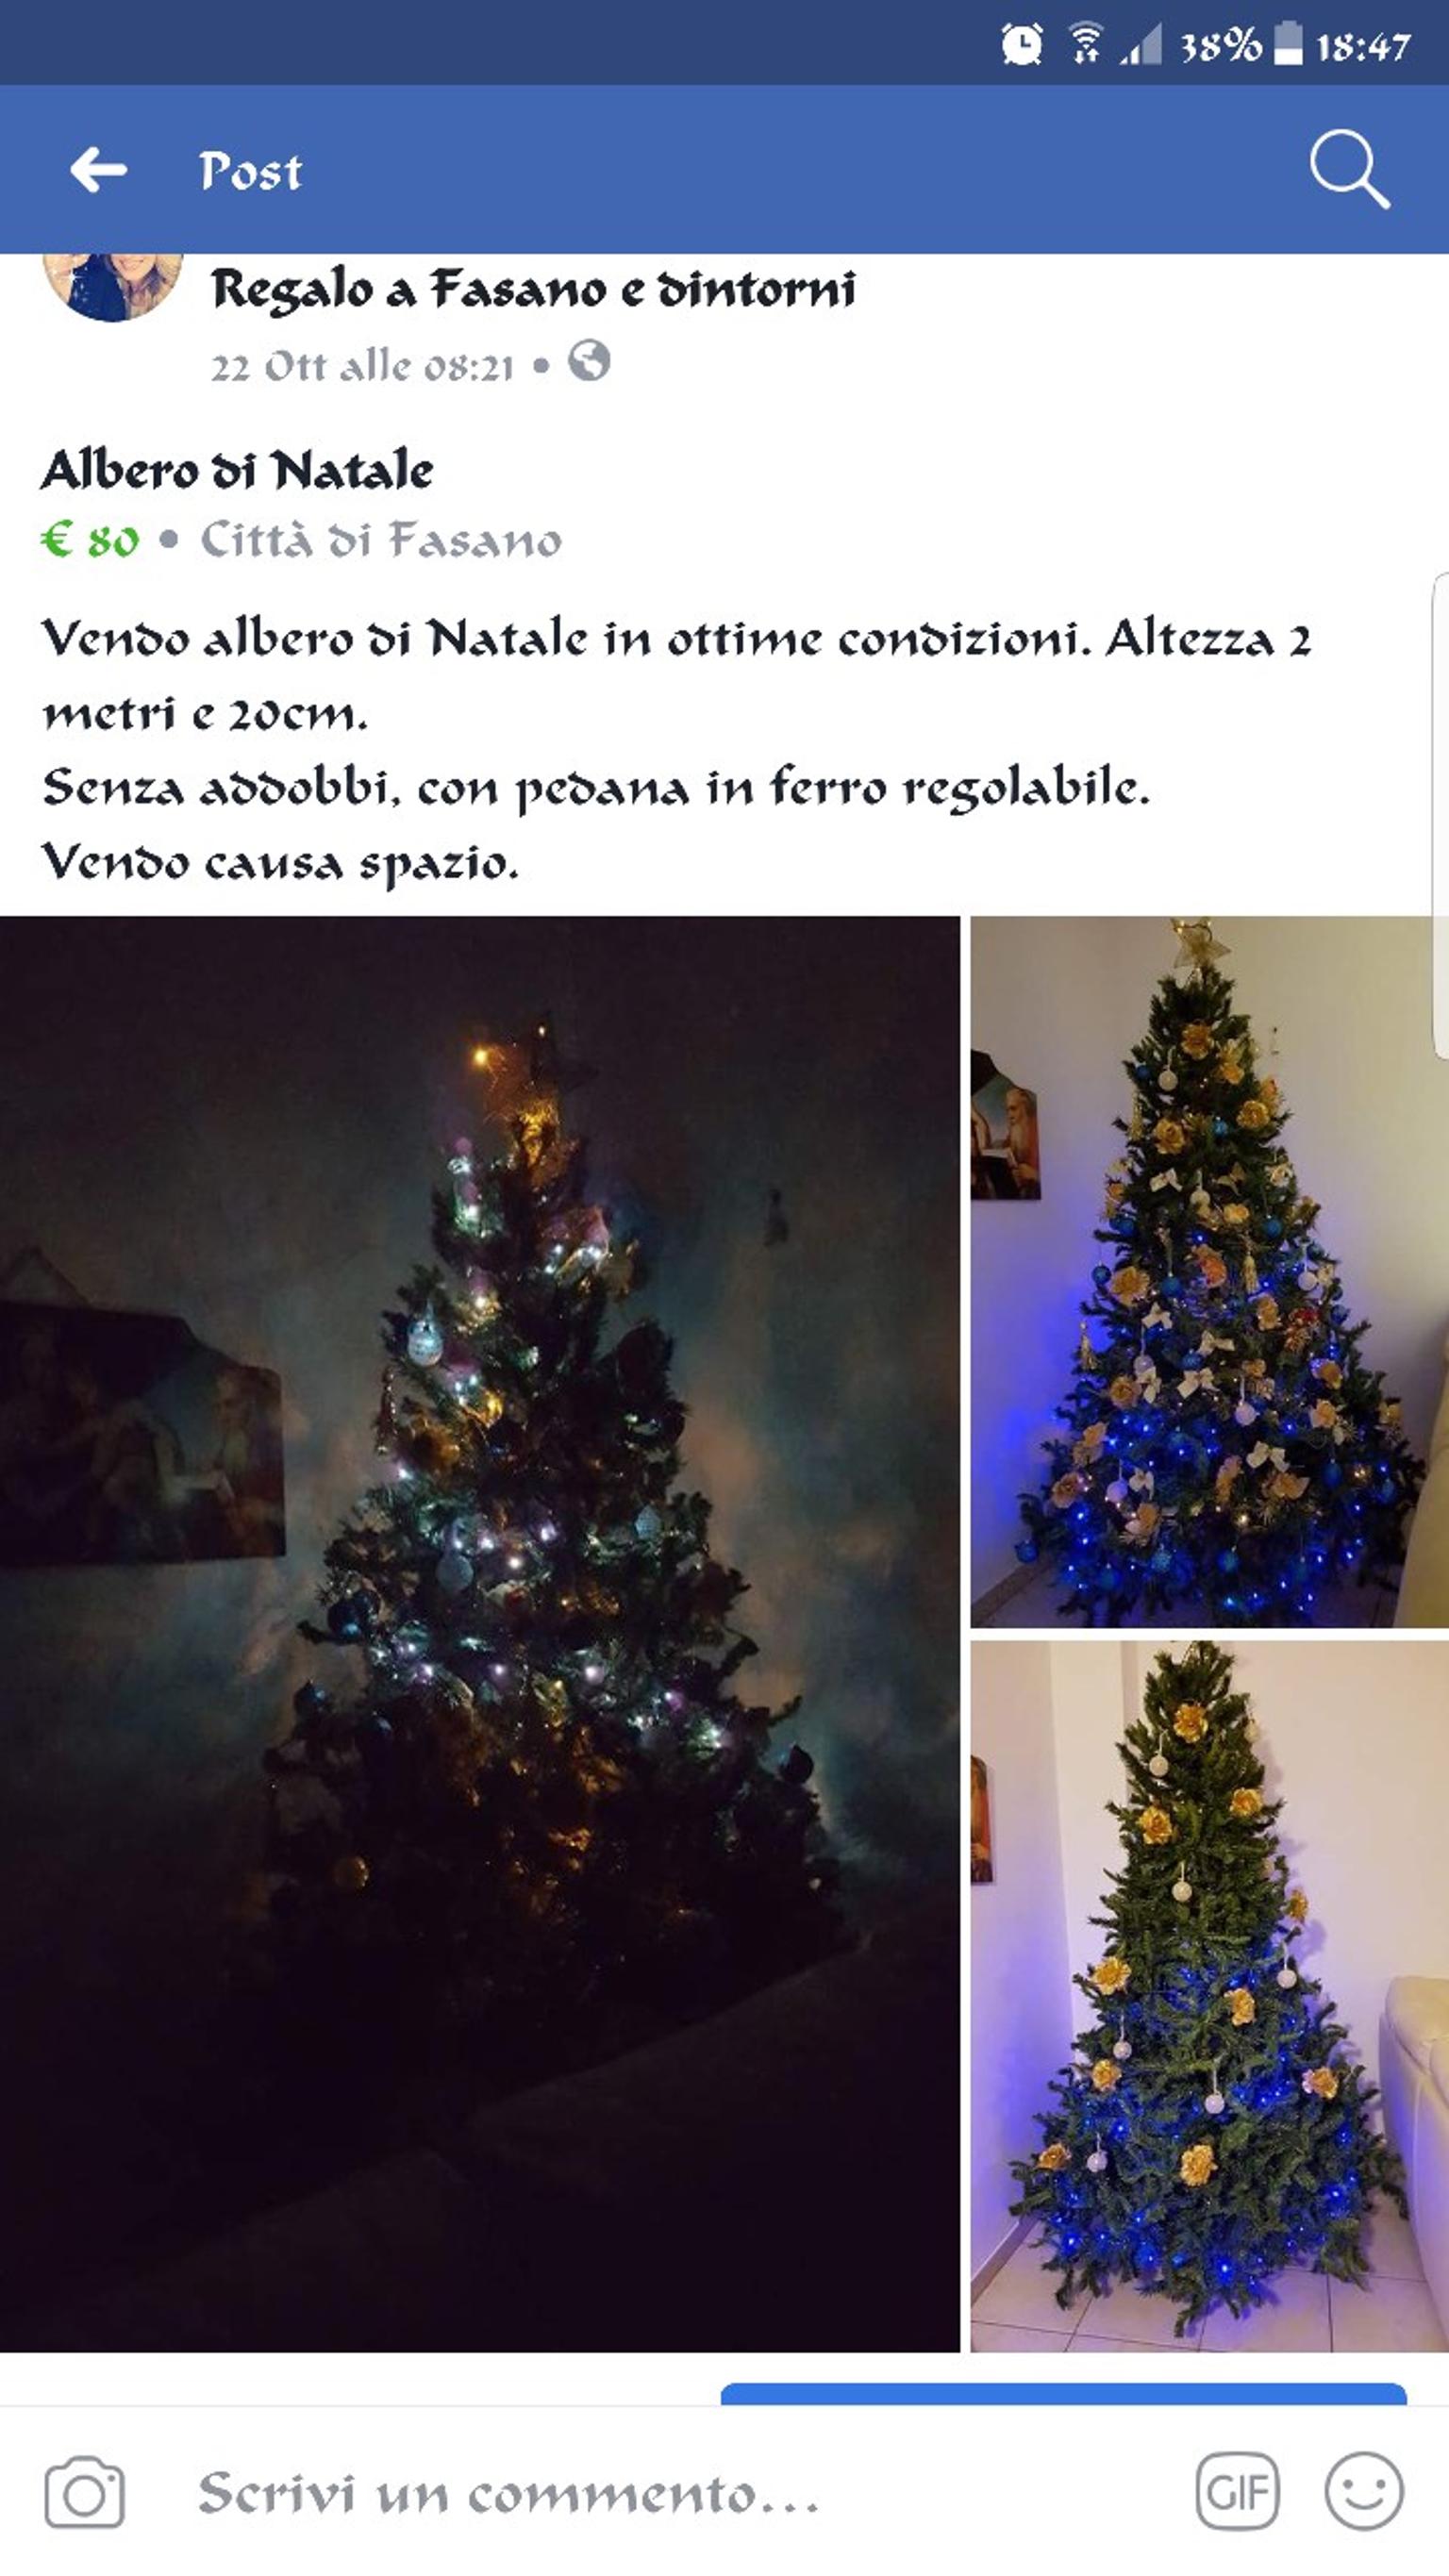 Albero Di Natale 40cm.Vendo Albero Di Natale 2 Metri E 40 In 72010 Pezze Di Greco Fur 70 00 Zum Verkauf Shpock De